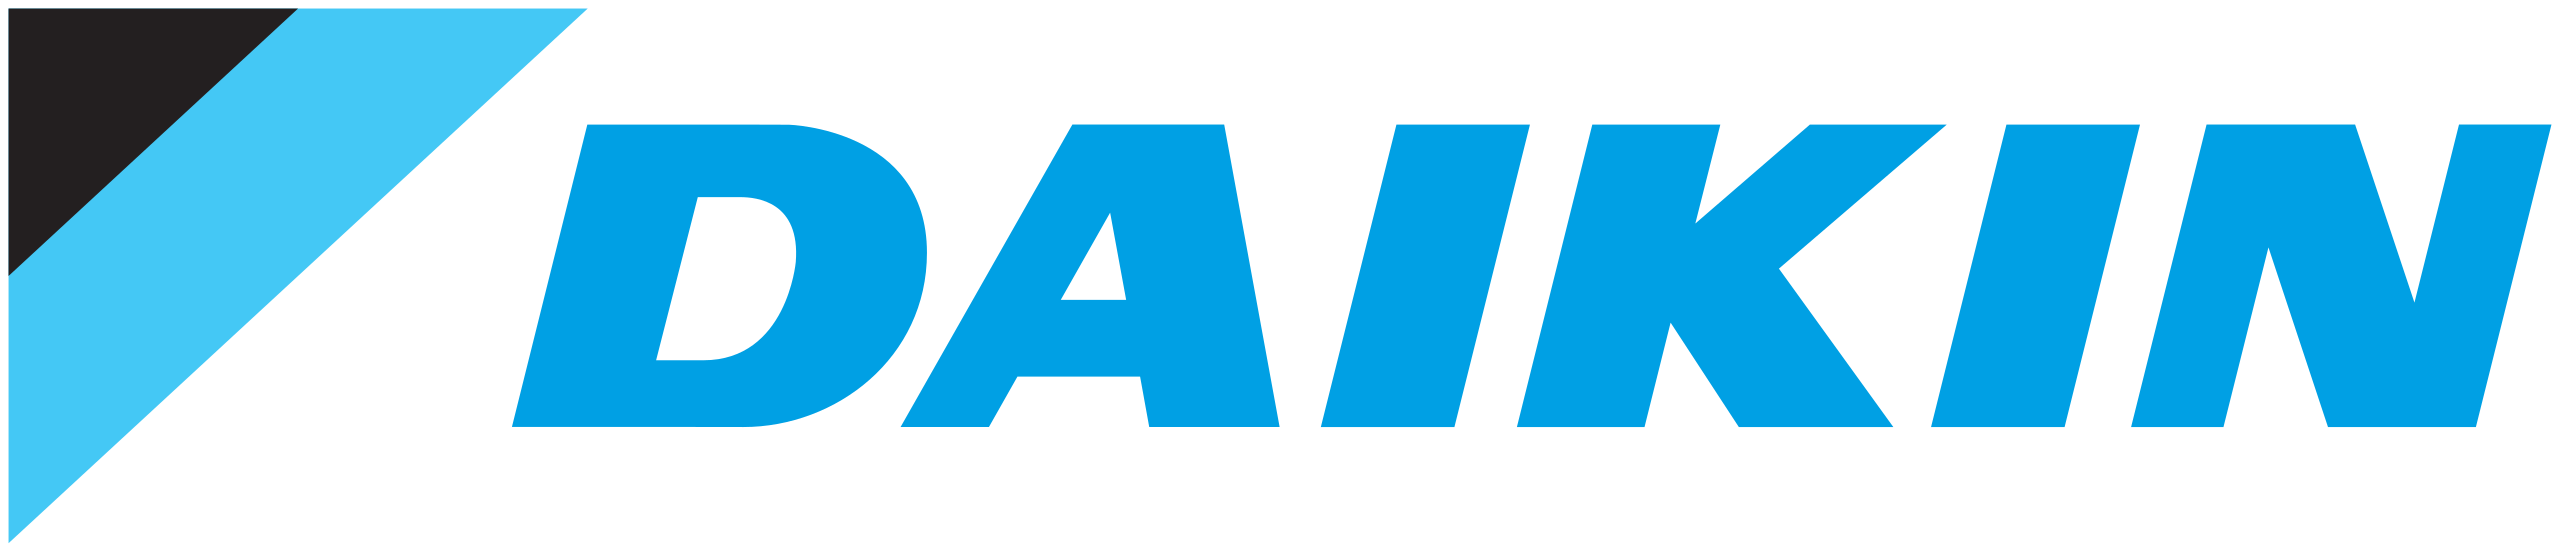 DAIKIN_logo